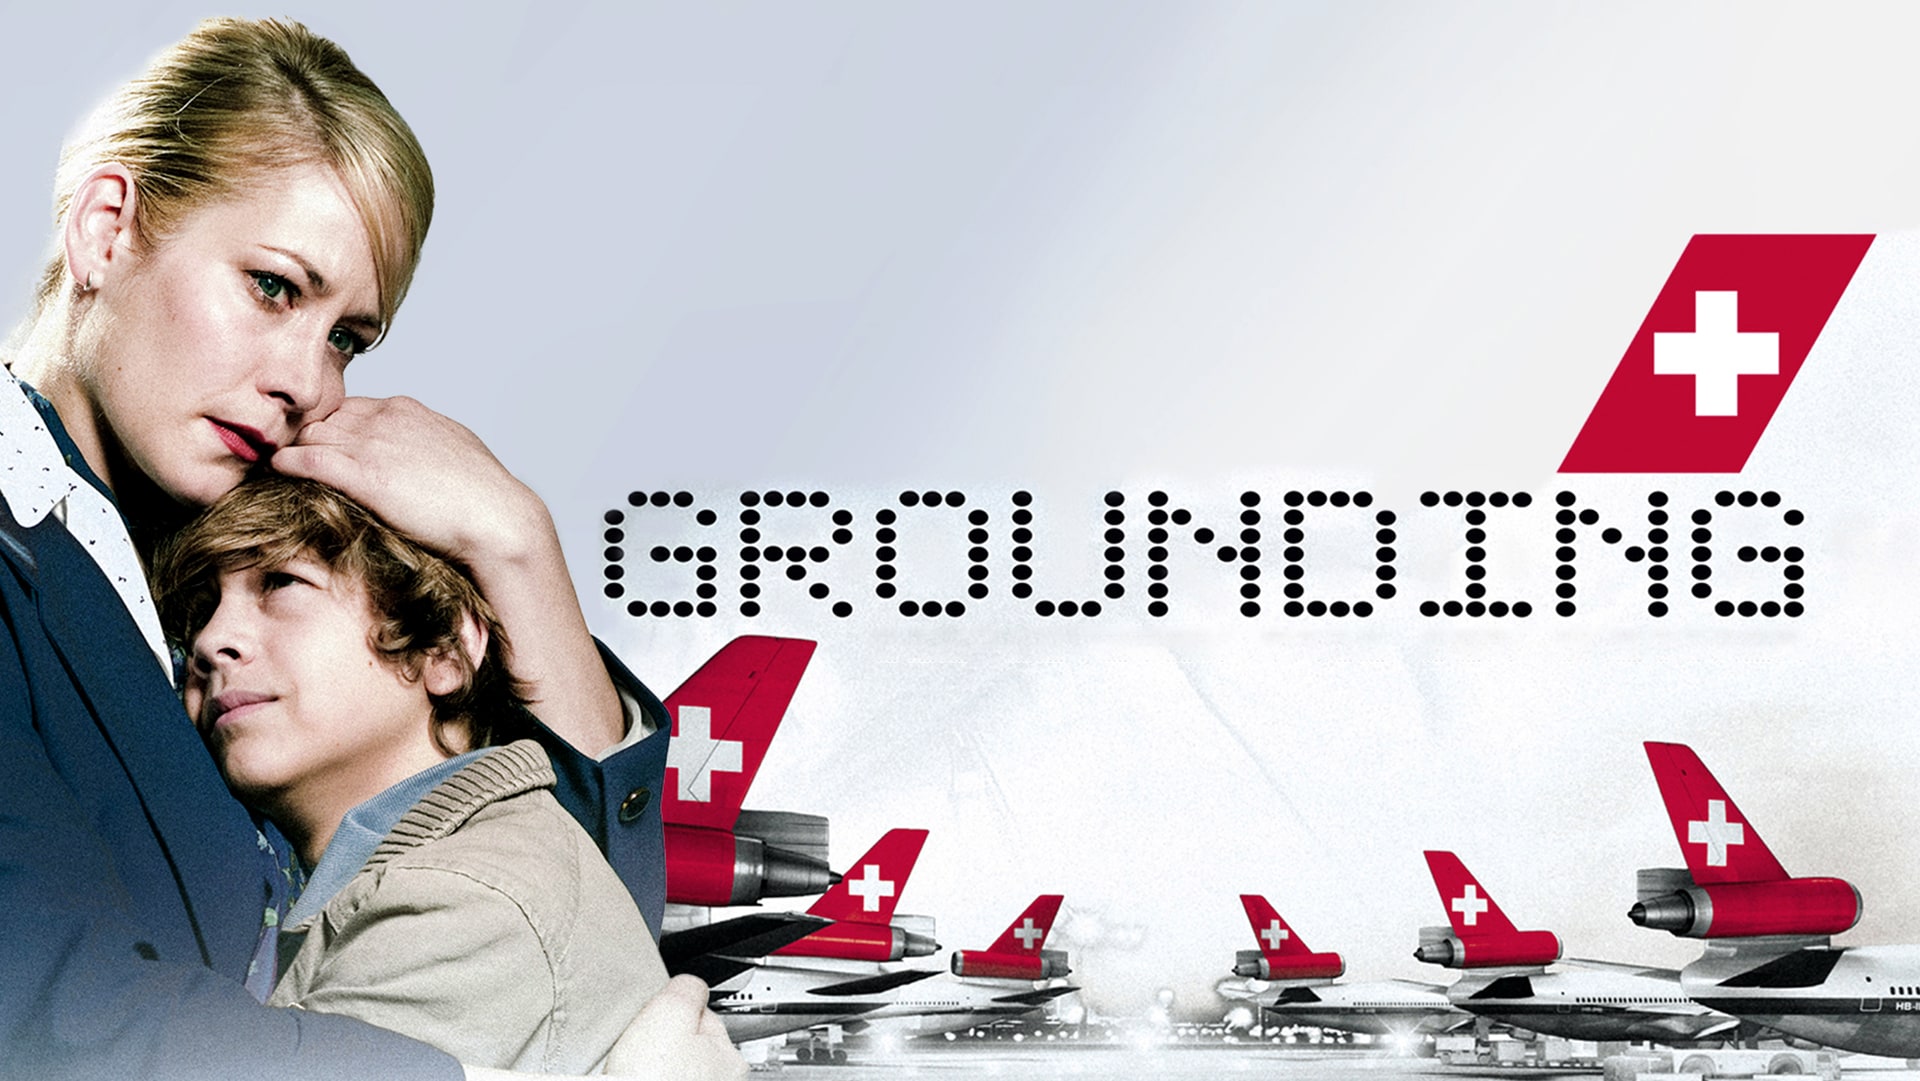 Grounding - Gli ultimi giorni di Swissair